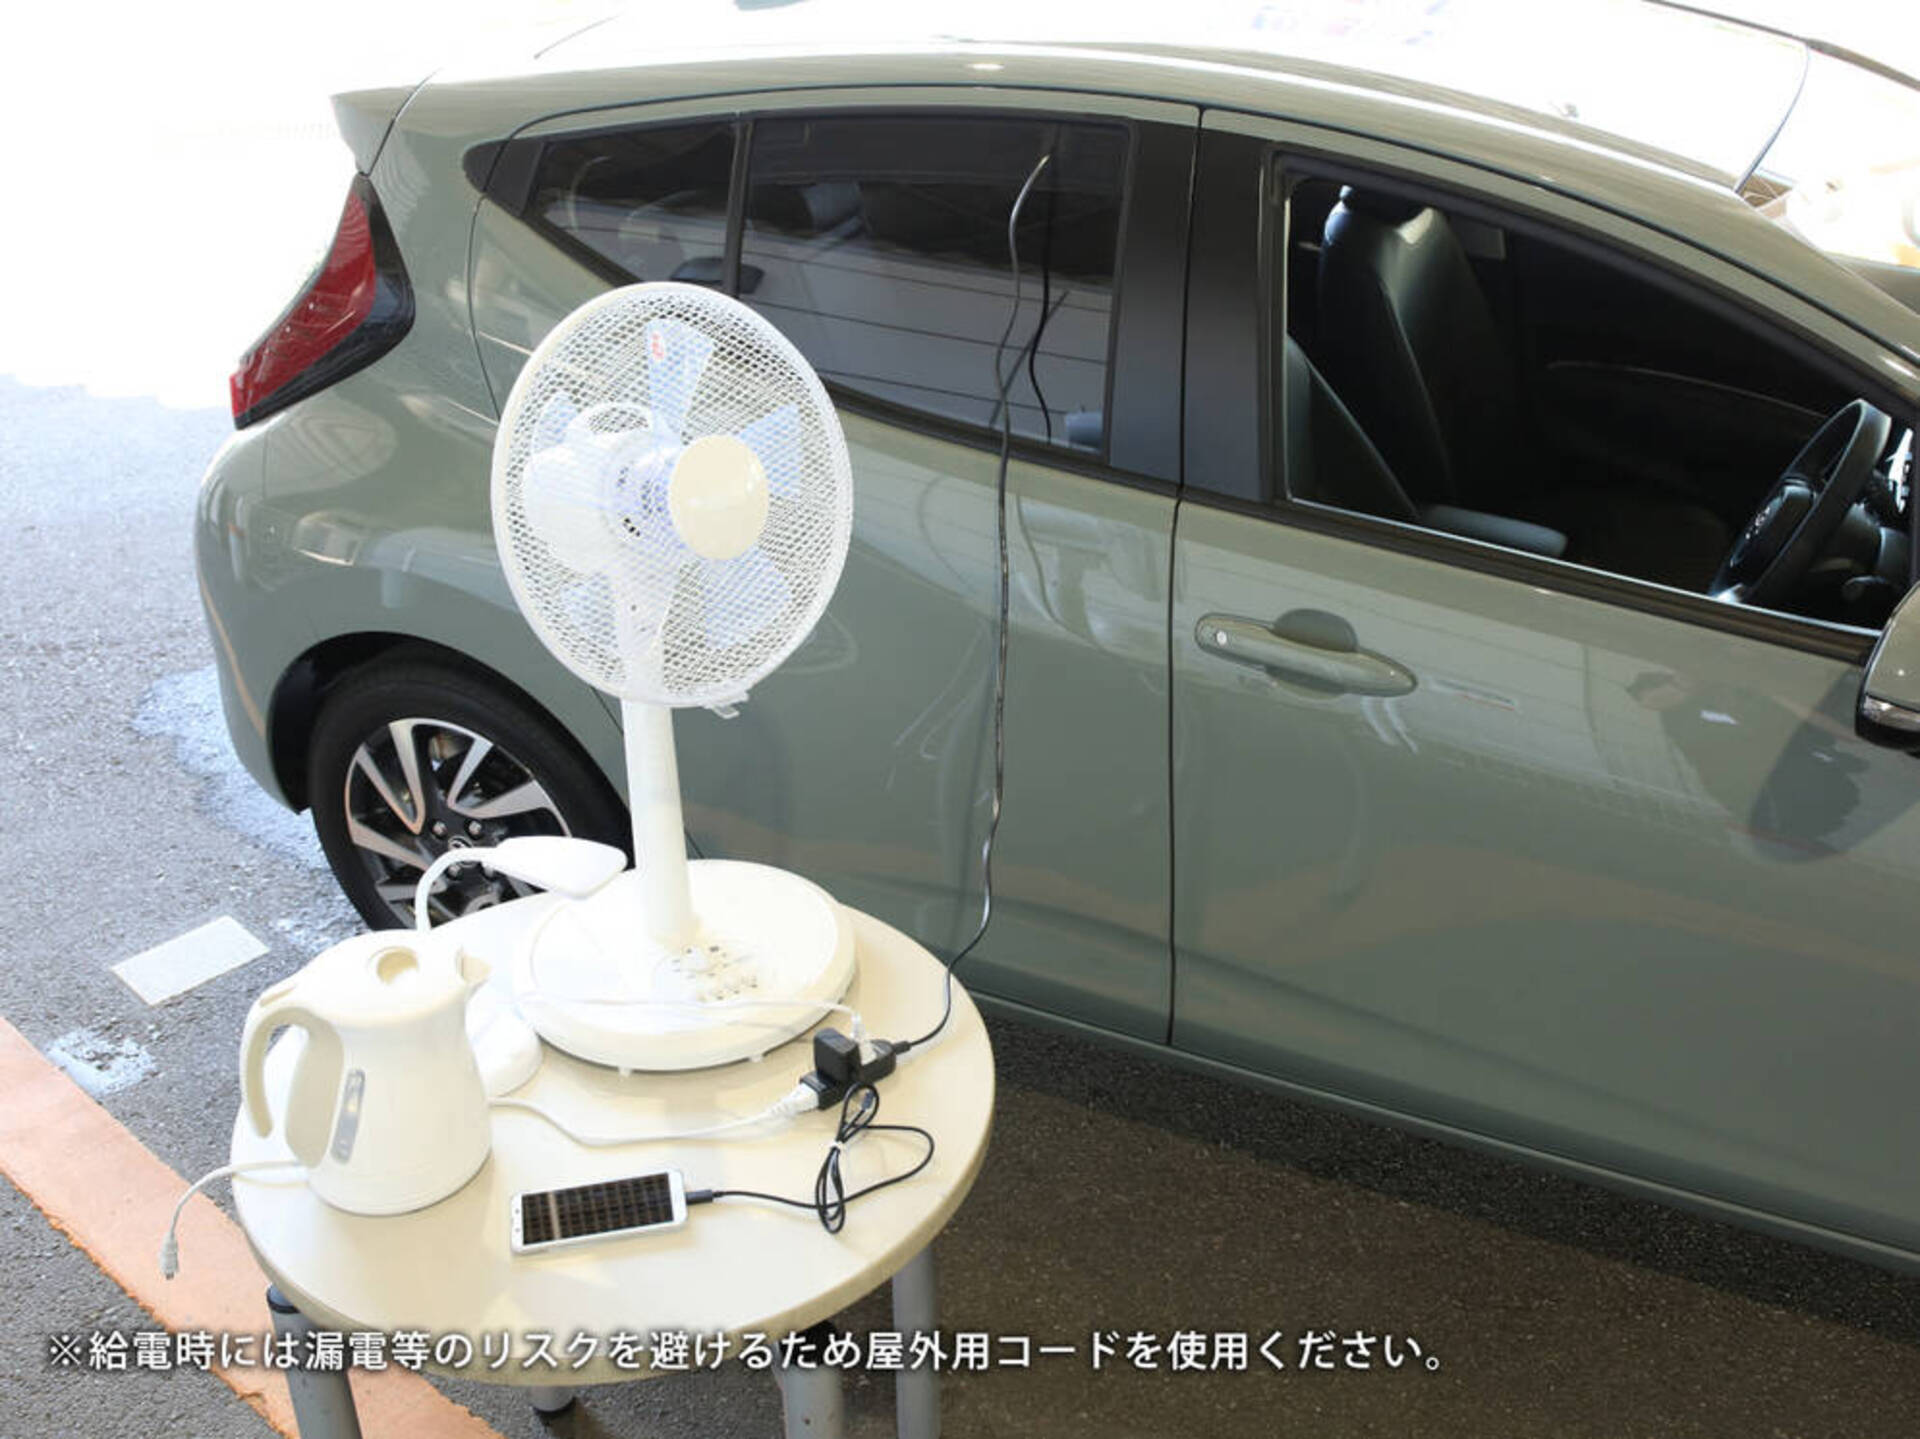 トヨタ アクアが初のフルモデルチェンジ 価格は198万円 全9色のボディカラーで新型アクアが発売開始 1 3 車と旅のwebメディア Mobility Story モビスト